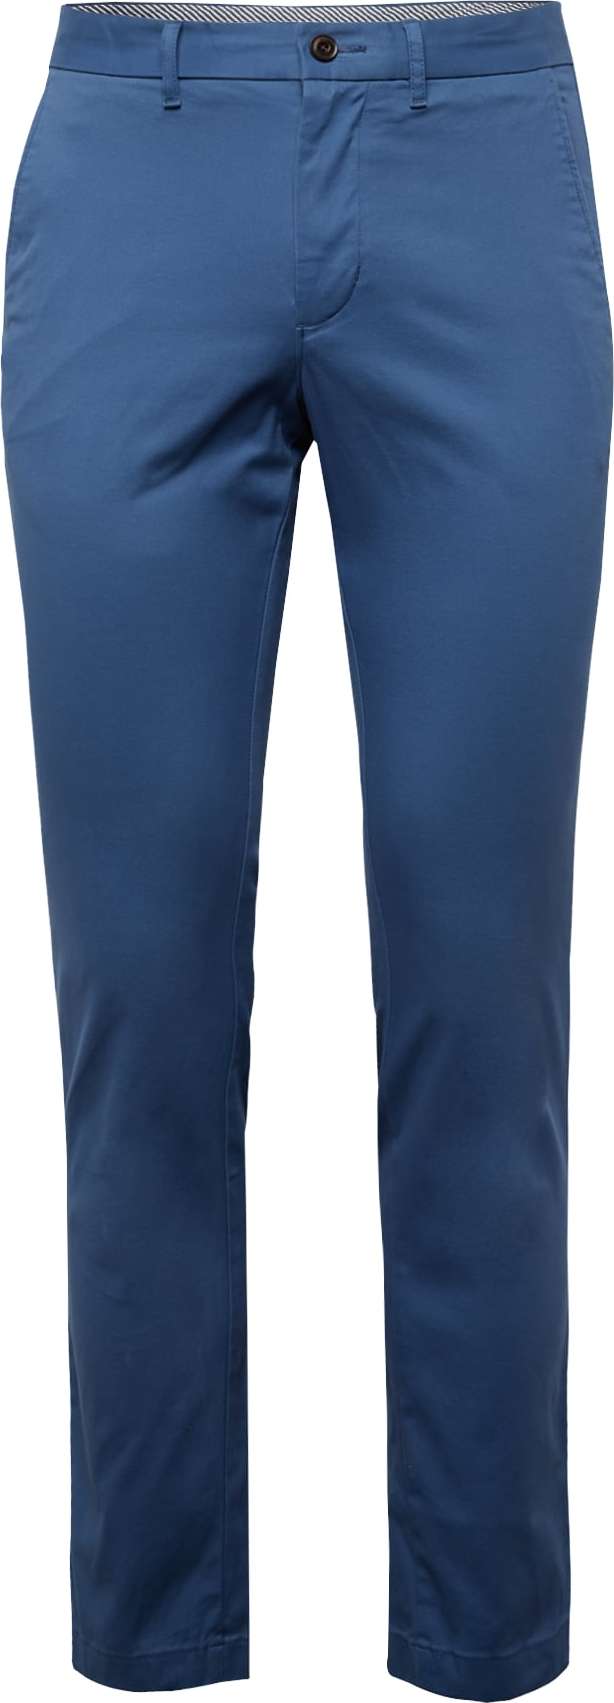 Chino kalhoty 'Denton' Tommy Hilfiger tmavě modrá